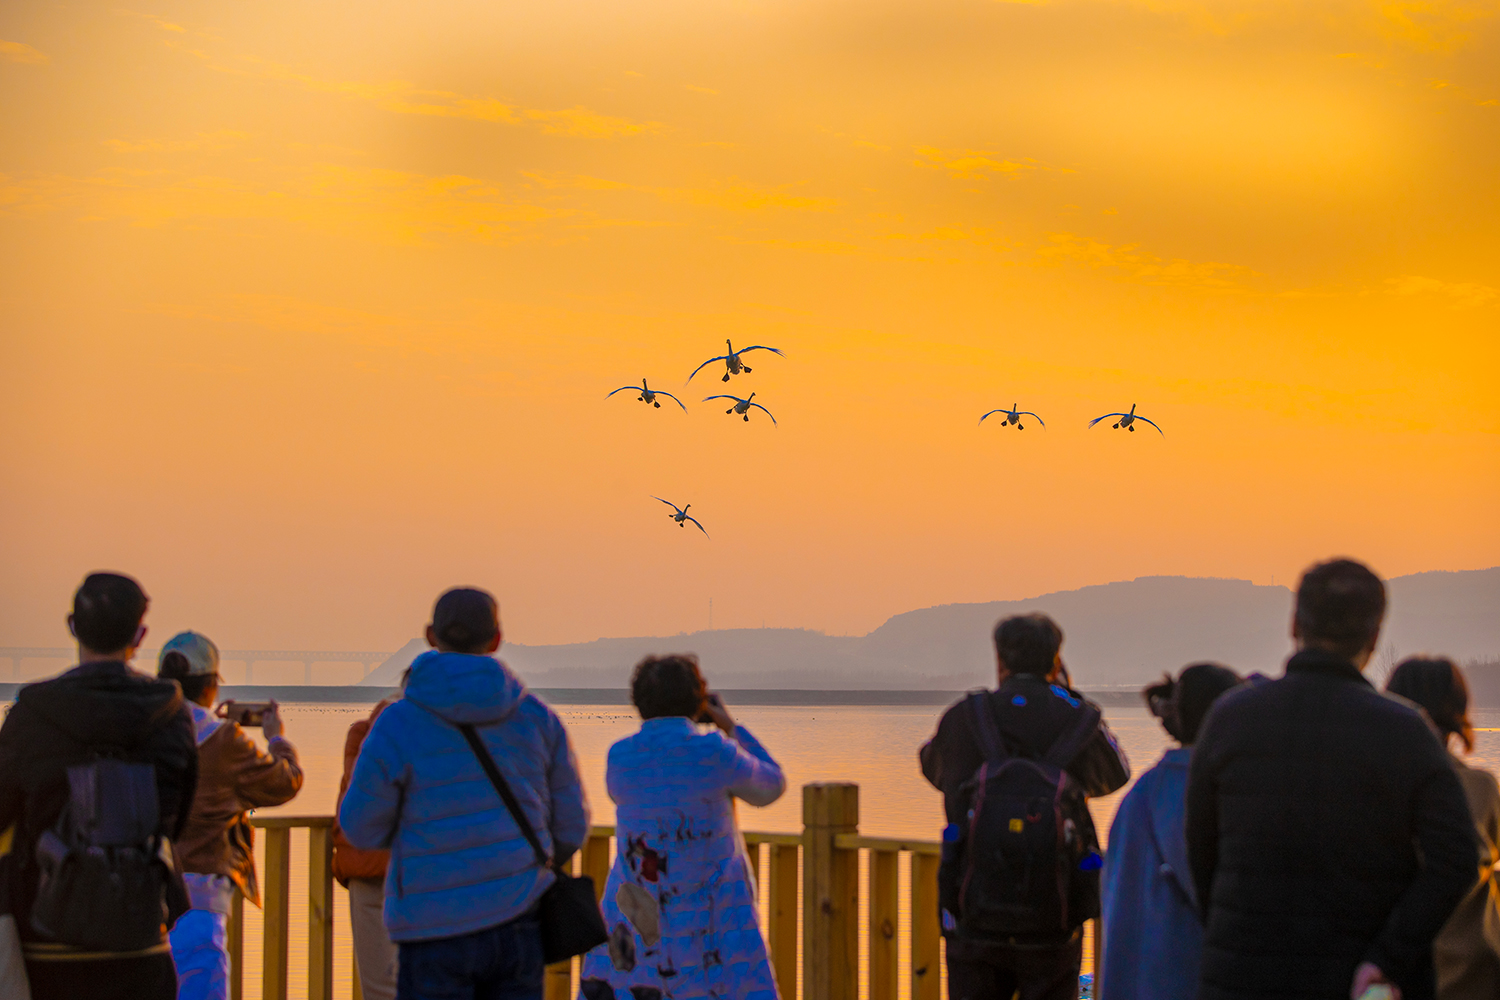 游客在景观台观赏大天鹅。刘文礼 摄